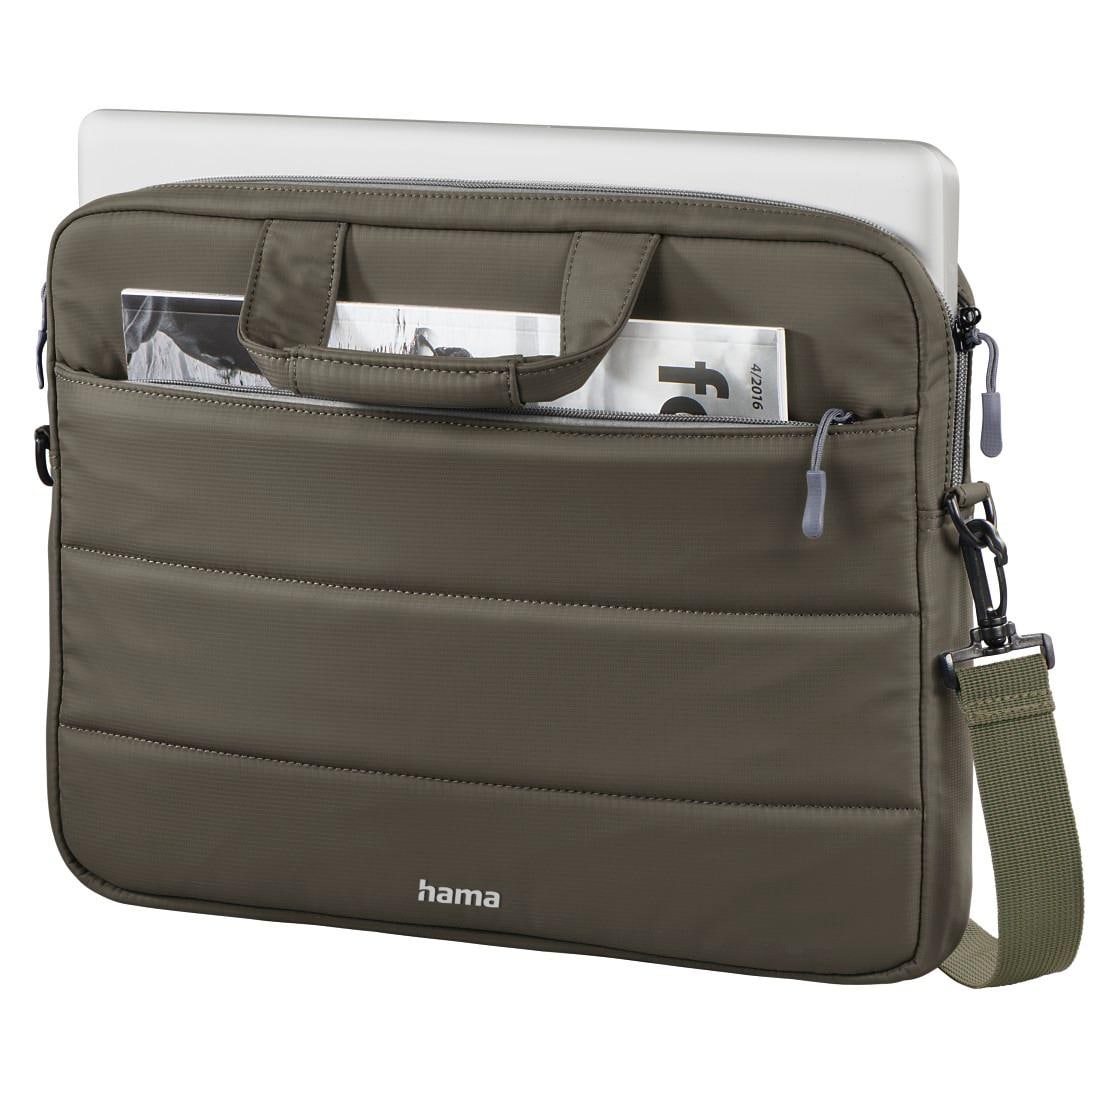 Hama Laptoptasche »Notebook Tasche bis 34 cm (13,3 Zoll) aus Nylon, eleganter Look«, Mit Tablet- und Dokumentenfach, Organizerstruktur und Trolleyband